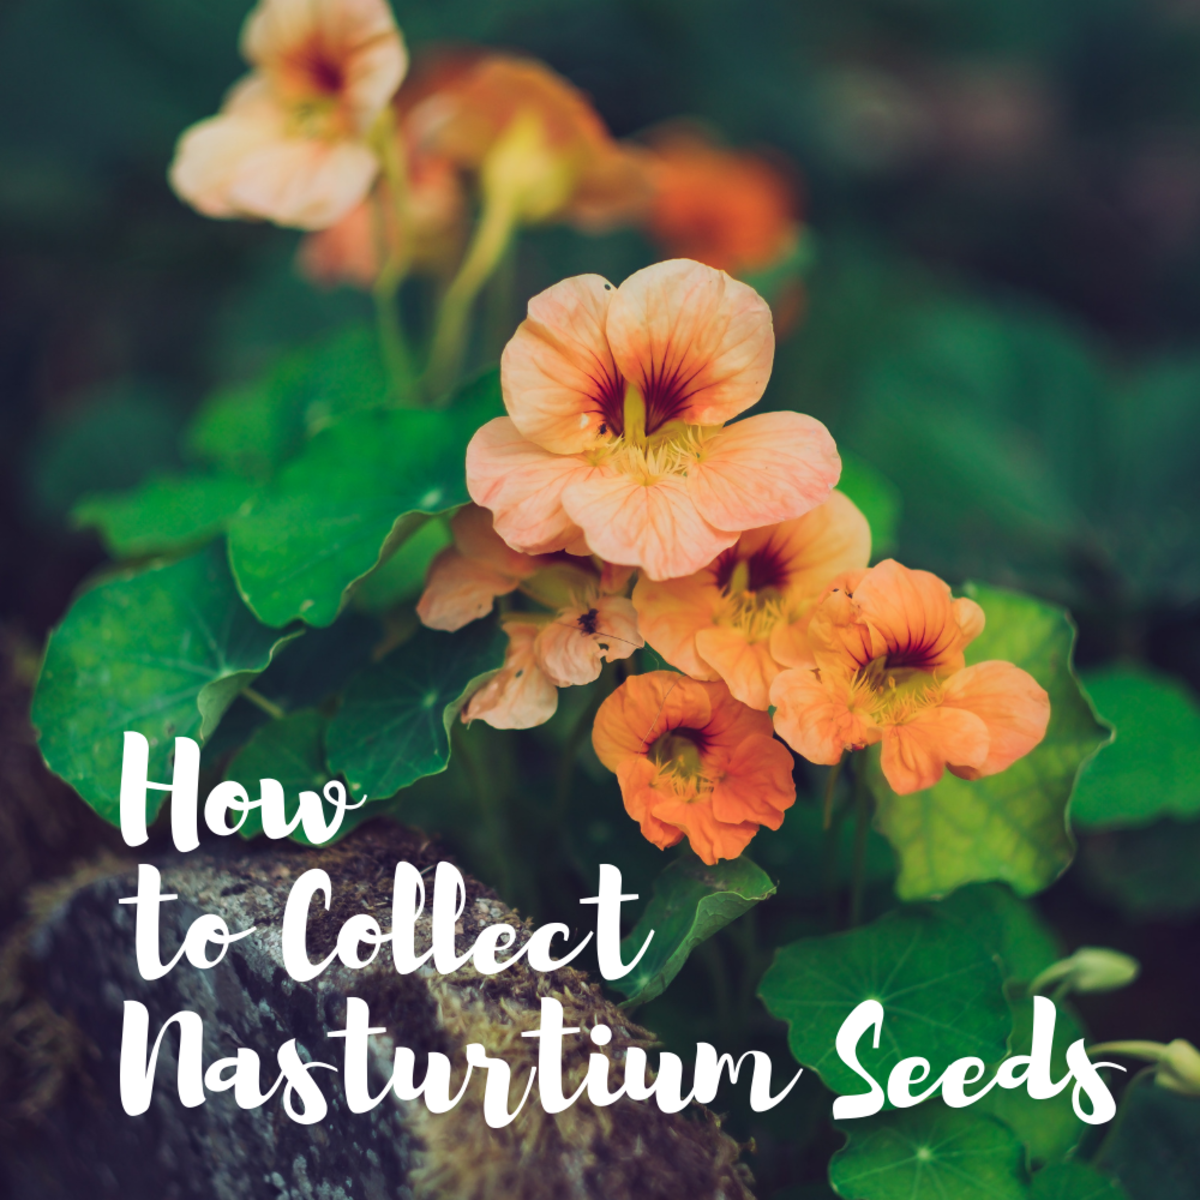 How to Collect Nasturtium Seeds - Dengarden